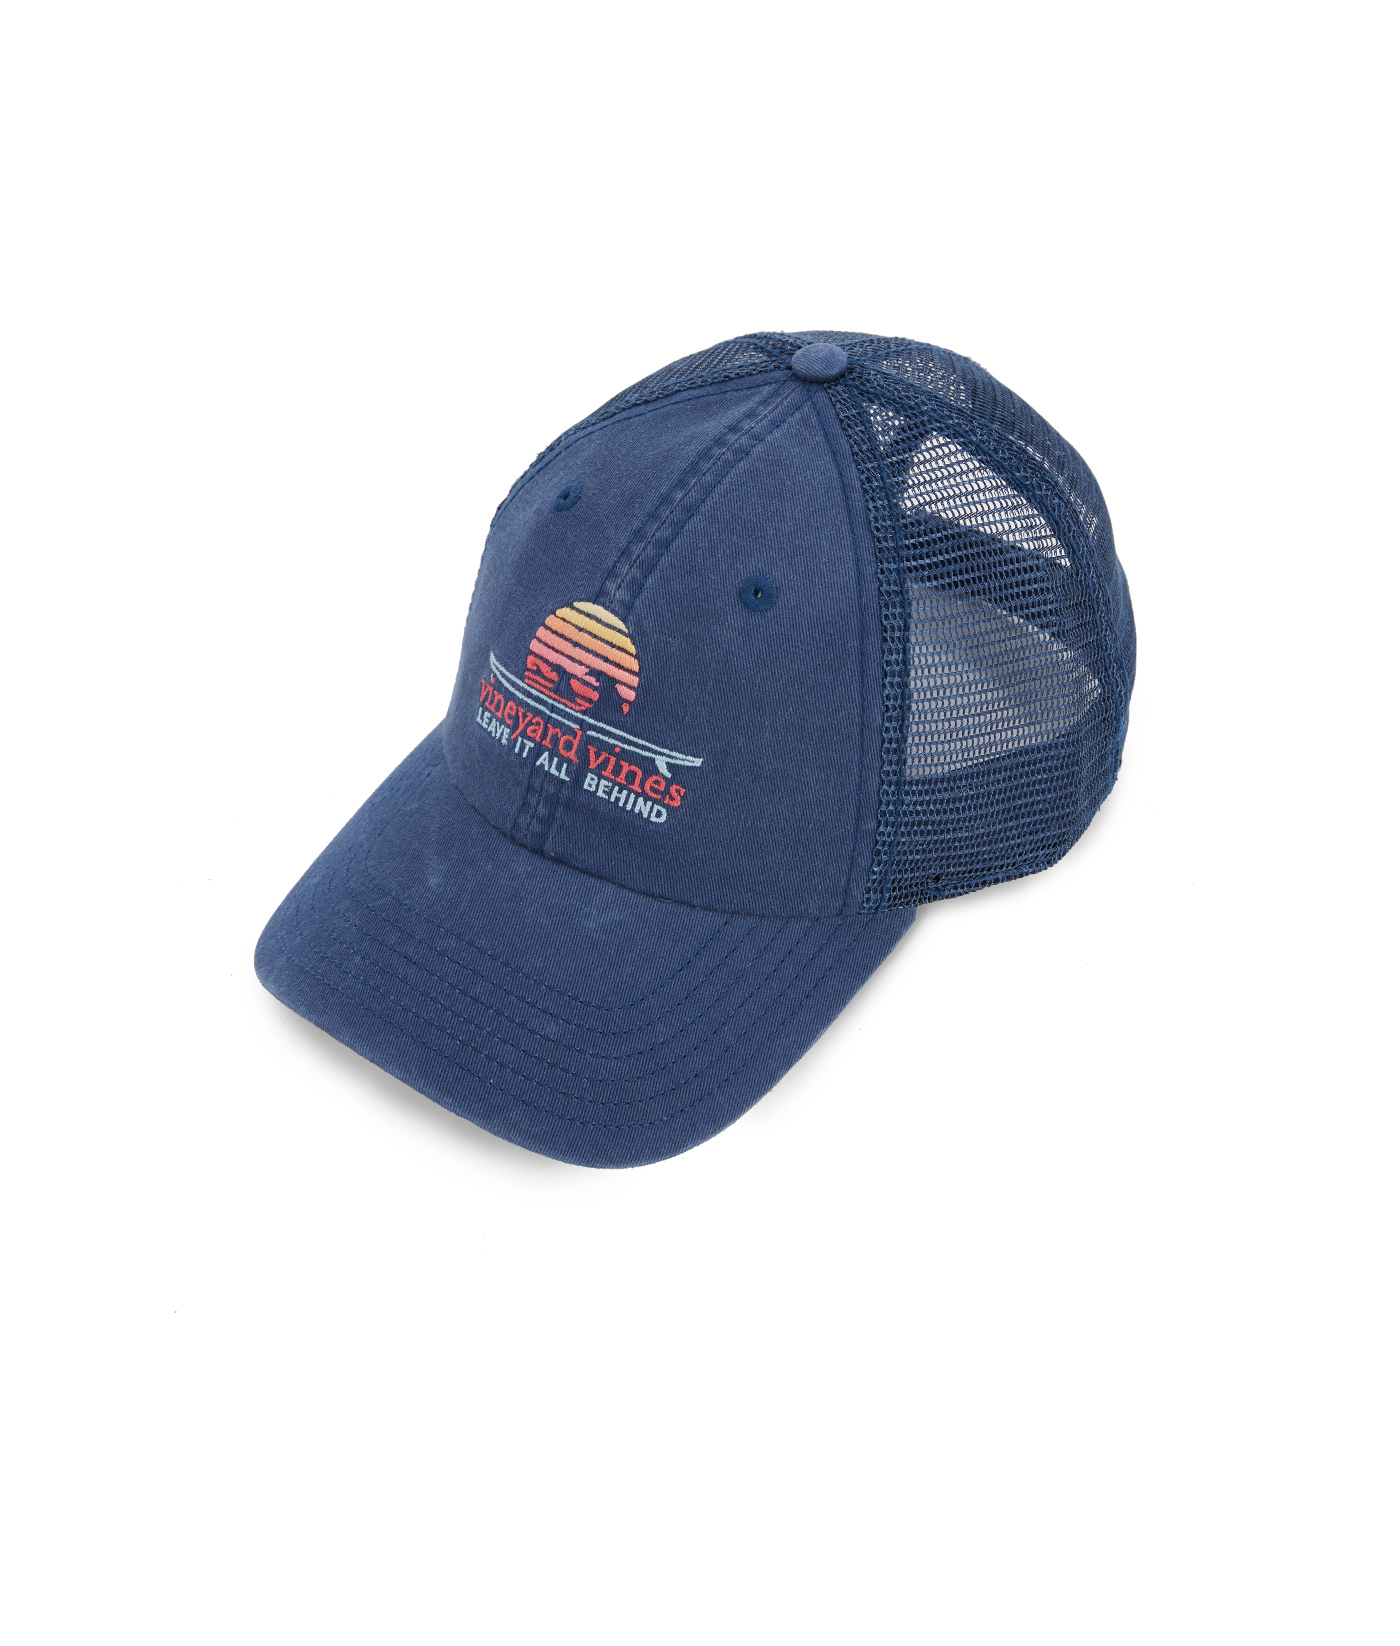 Vineyard Vines Men's Harbour Fish Trucker Hat